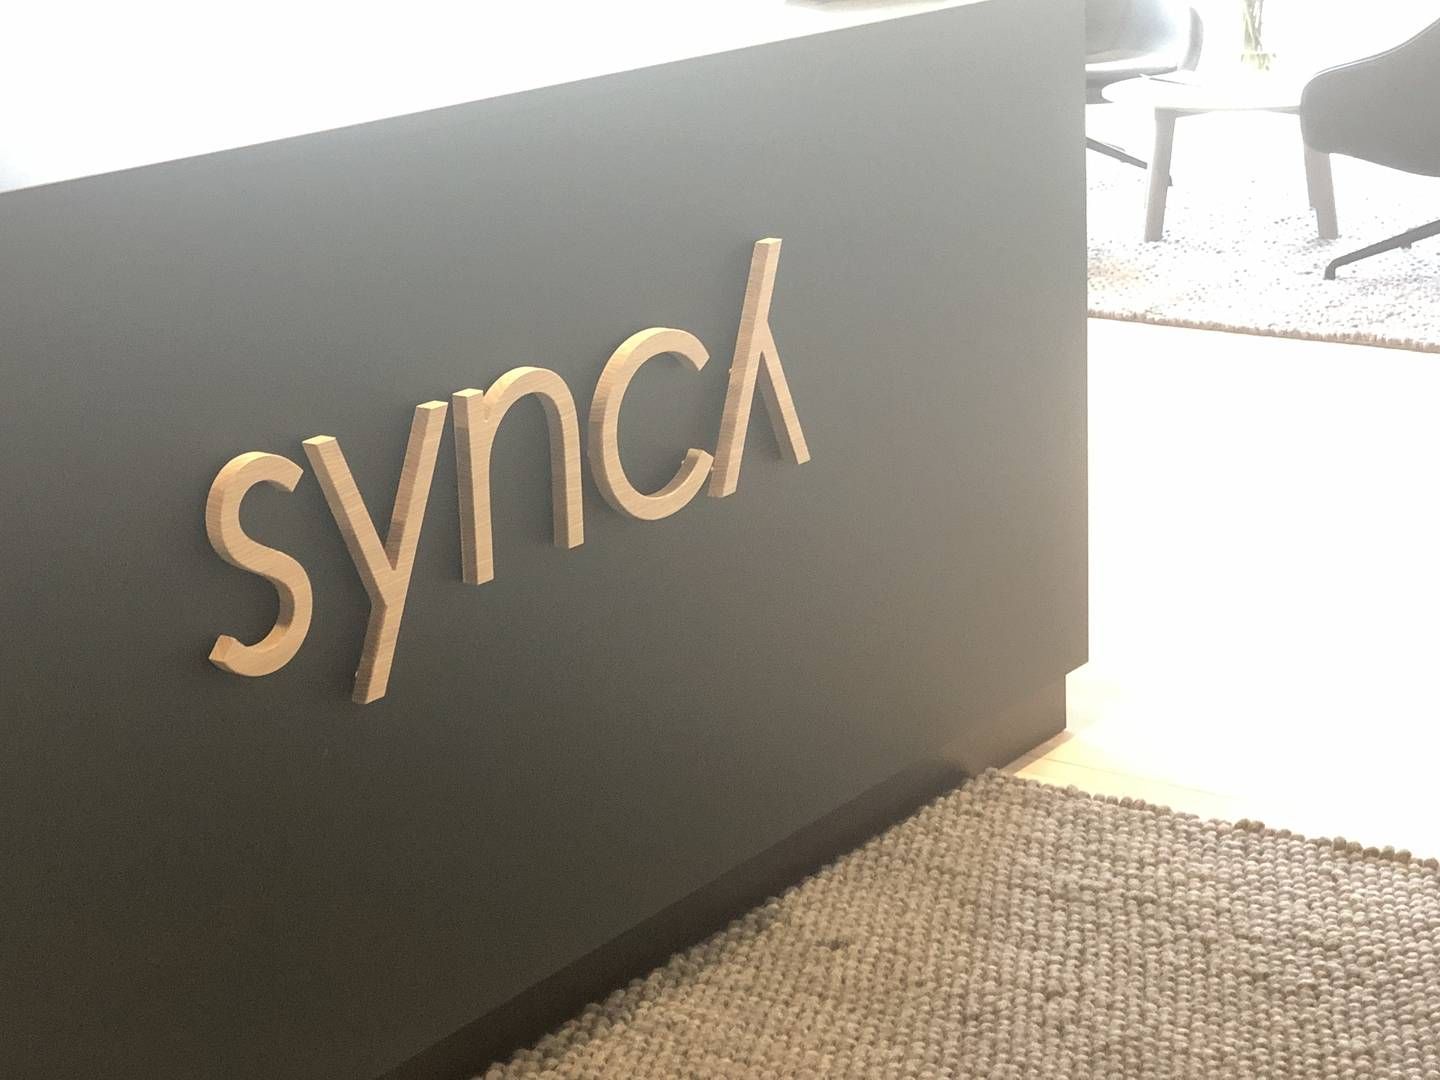 Advokatirmaet Synch skal samarbejde med Københavns Universitet. | Foto: Synch / PR